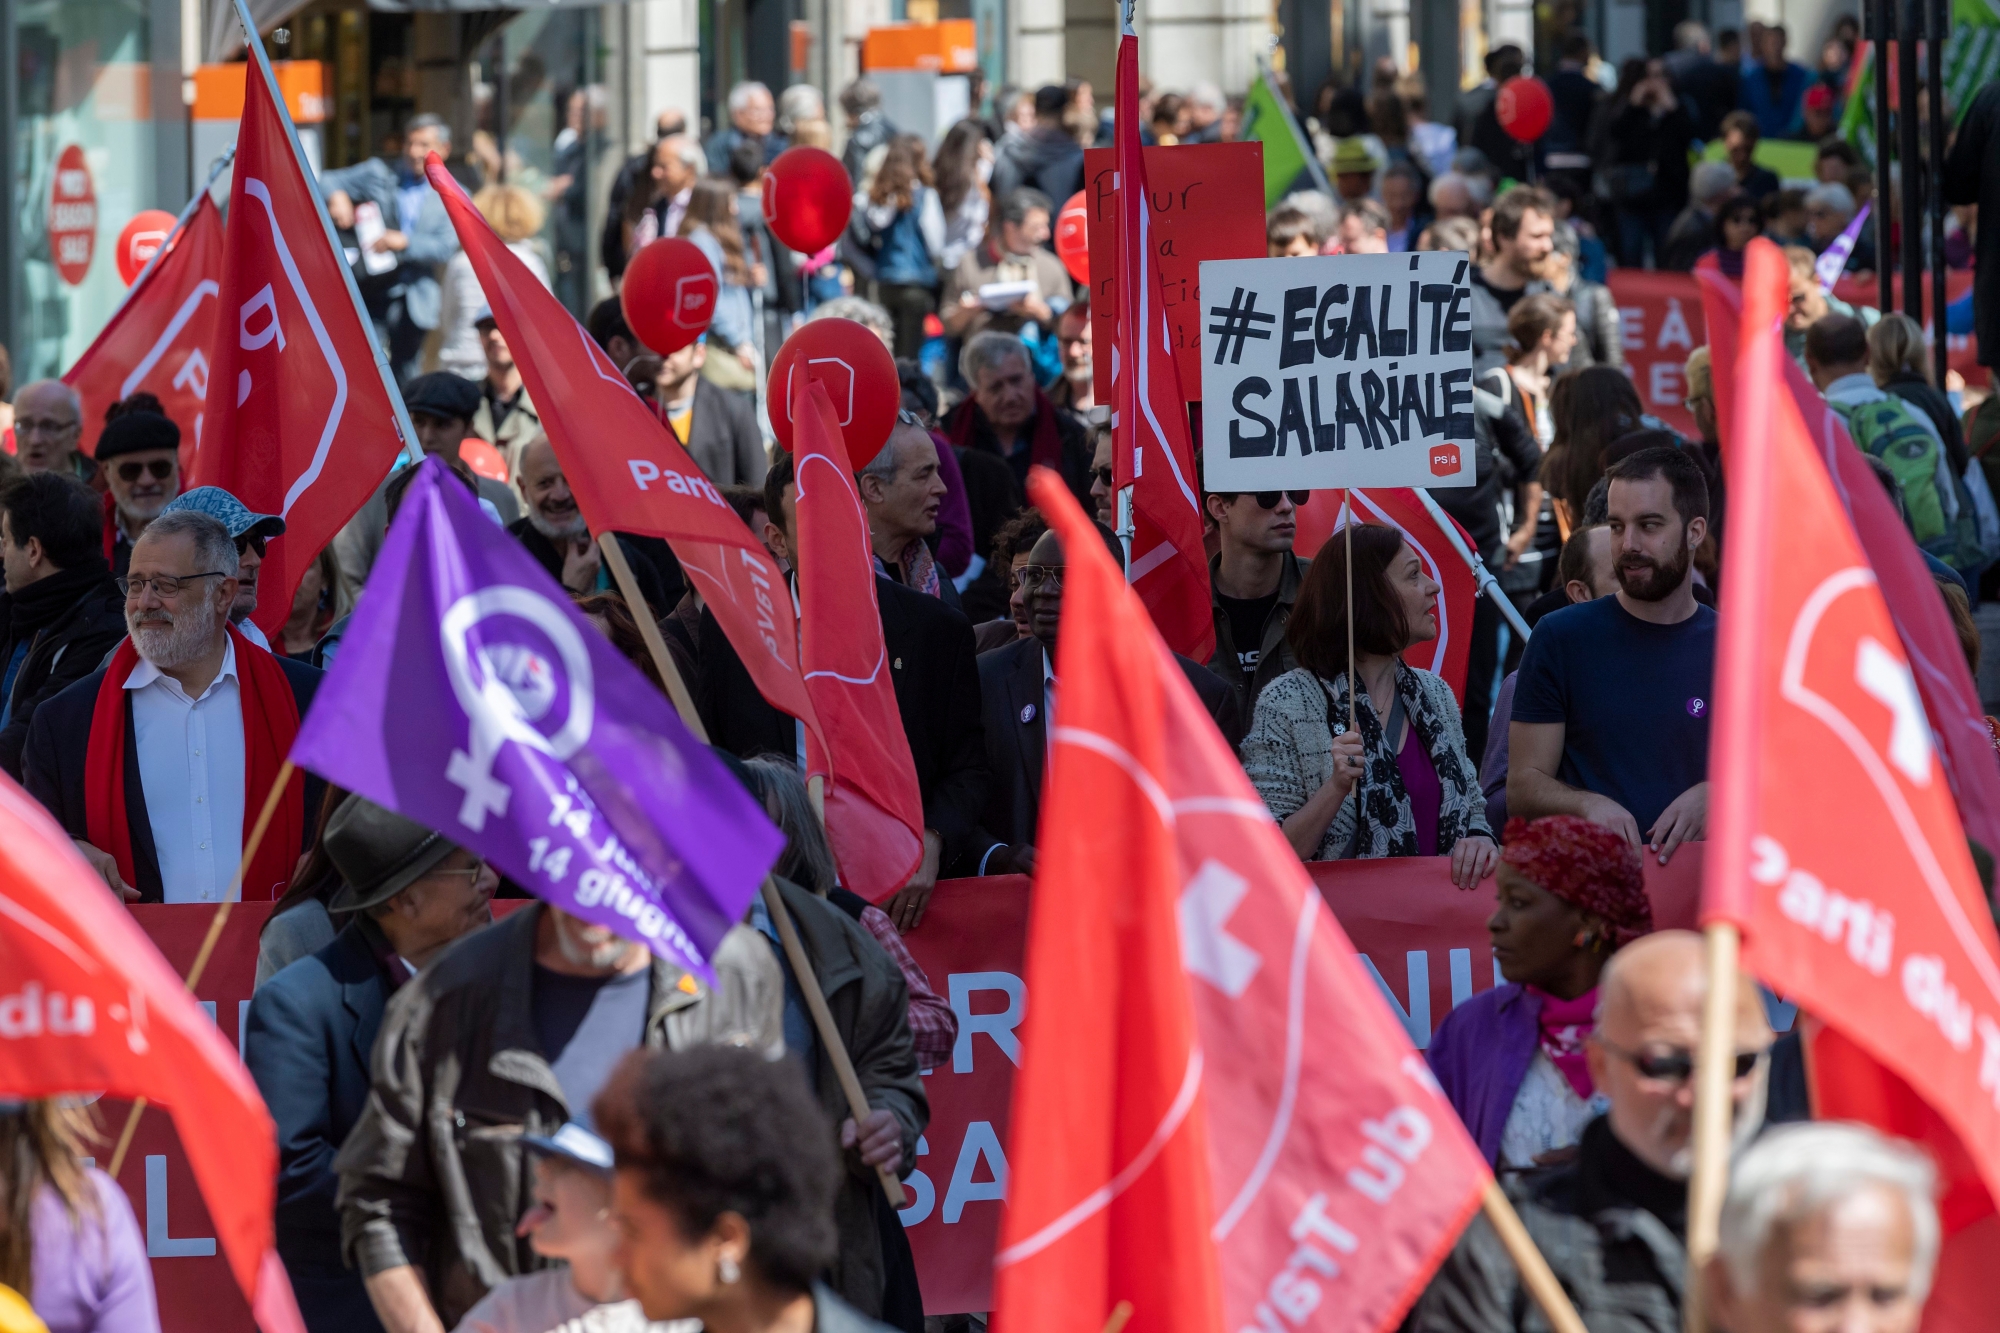 Des manifestants avec des pancartes et des drapeaux defilent dans les rues de Geneve, lors du defile du 1er mai - Fete du Travail , ce mercredi 1 mai 2019 a Geneve. A Geneve, pres de 2'000 personnes ont participe au traditionnel cortege du 1er mai place, cette annee, sous le signe de lÕegalite, greve des femmes et la justice sociale et le climat. (KEYSTONE/Martial Trezzini) SUISSE DEMO 1 MAI TRAVAIL